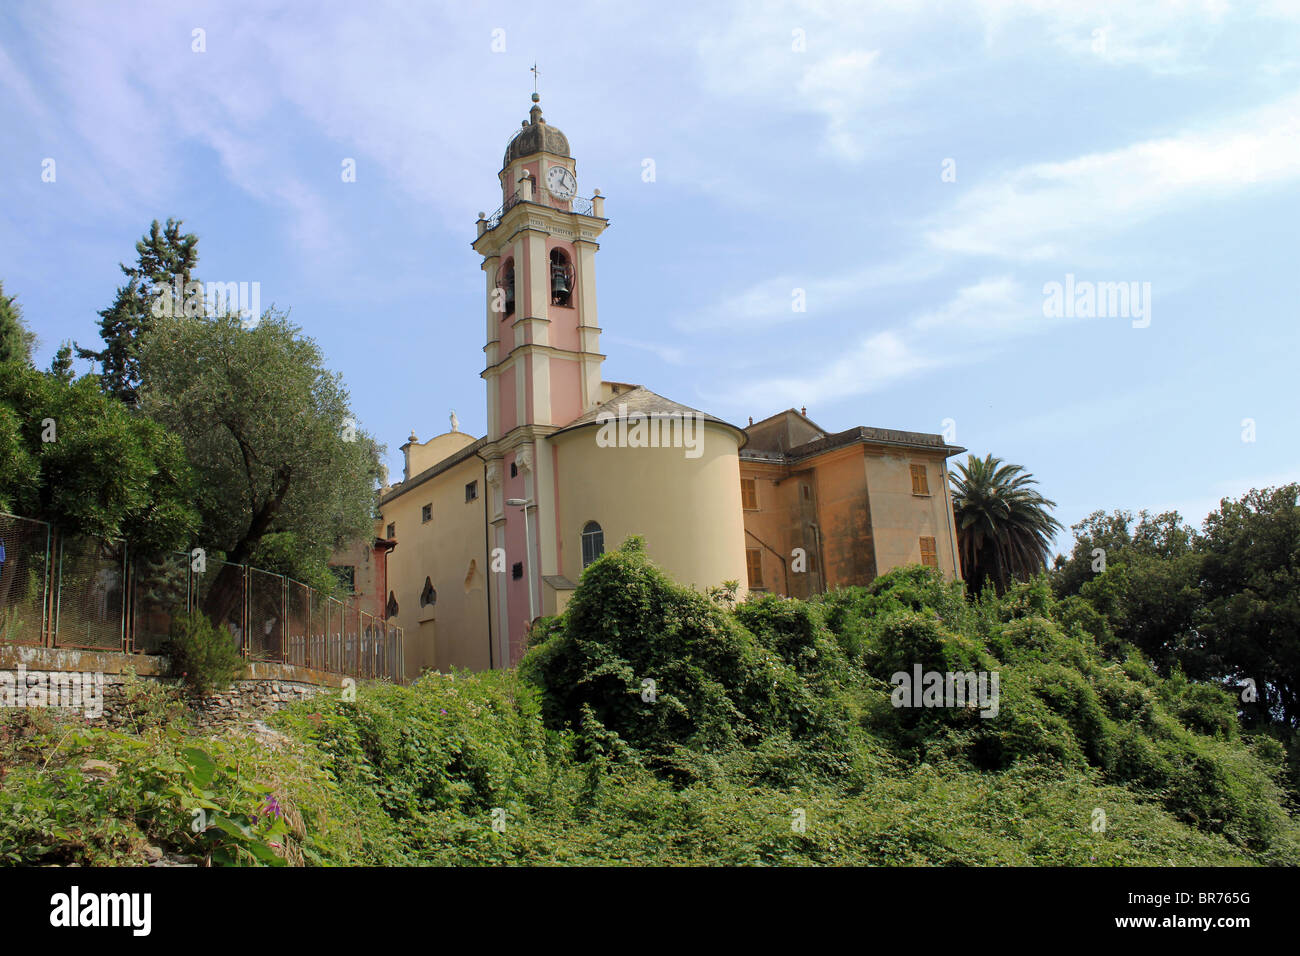 Chiesa parrocchiale della Santissima Concezione nella frazione di Cavi di Lavagna. Stock Photo